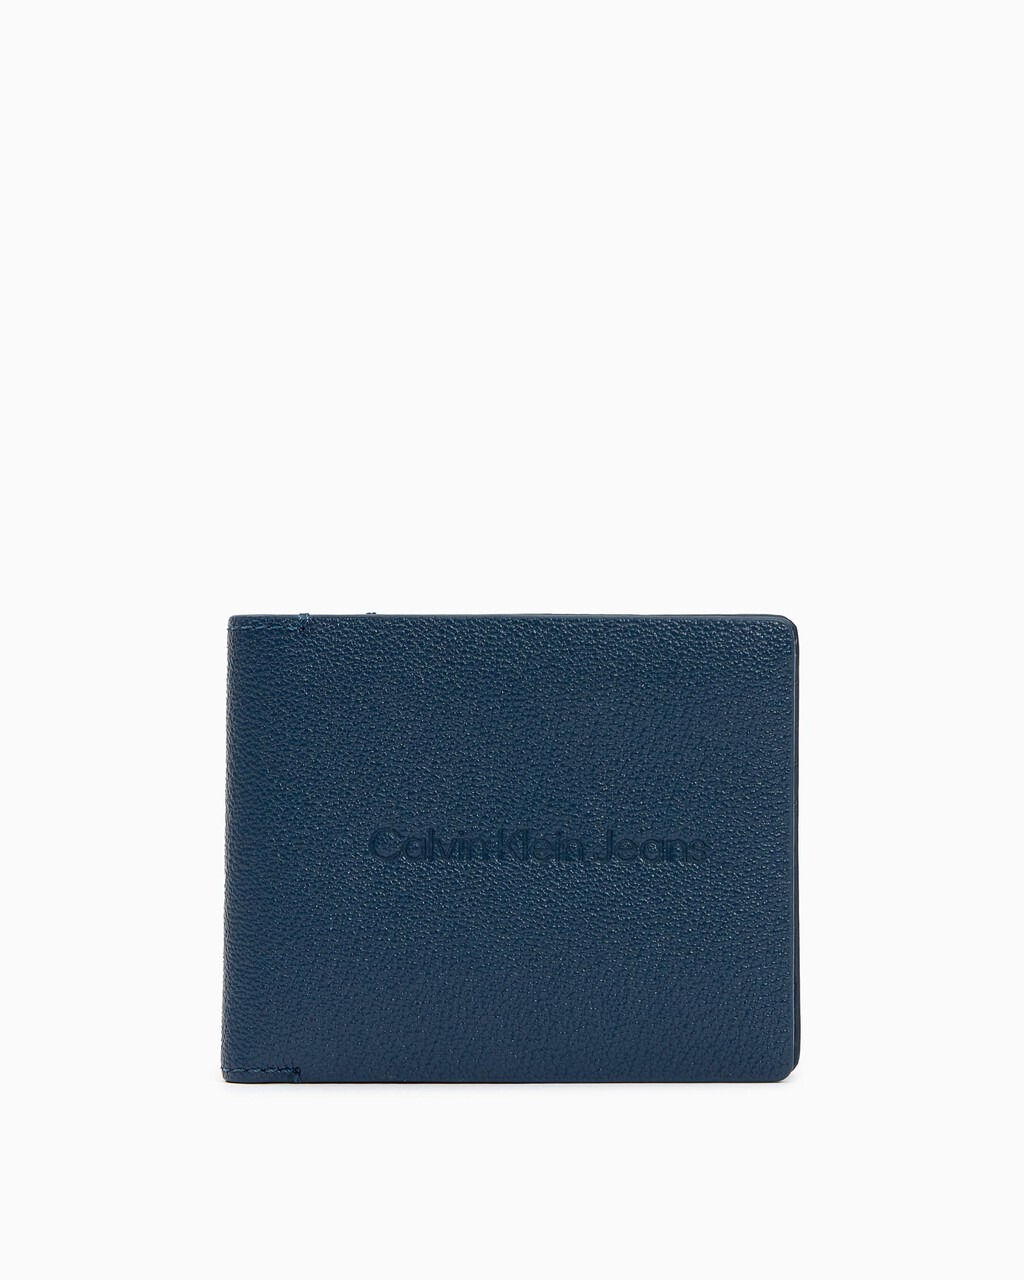 微細顆粒皮革短夾, ONYX BLUE, hi-res